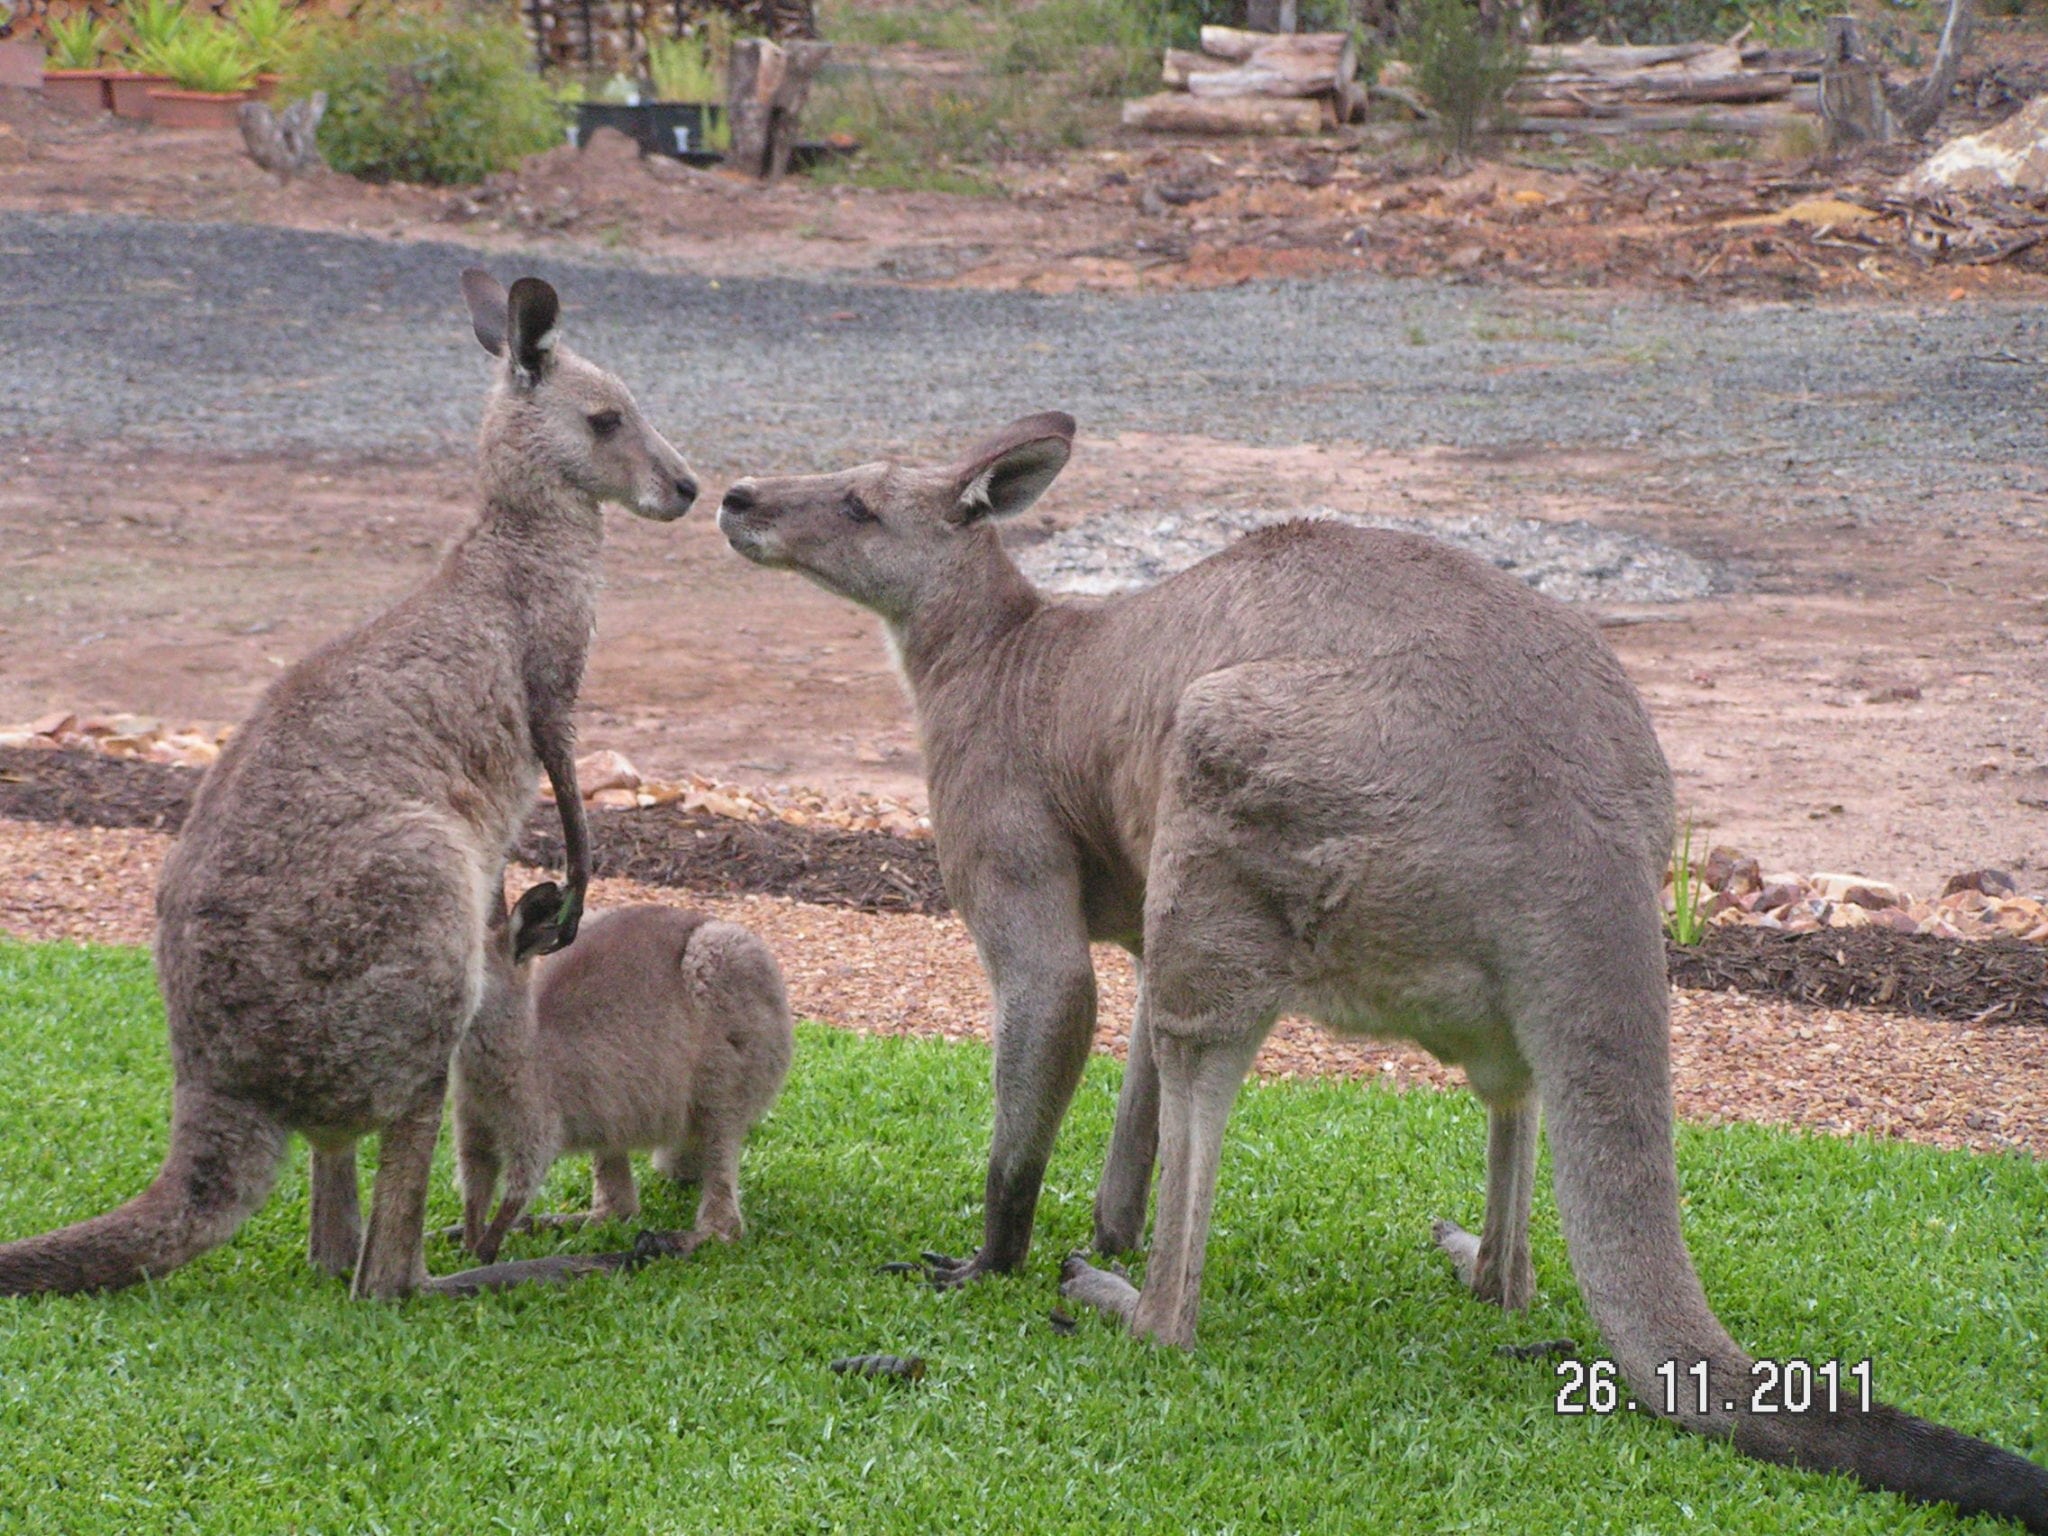 Kangaroos on lawn image